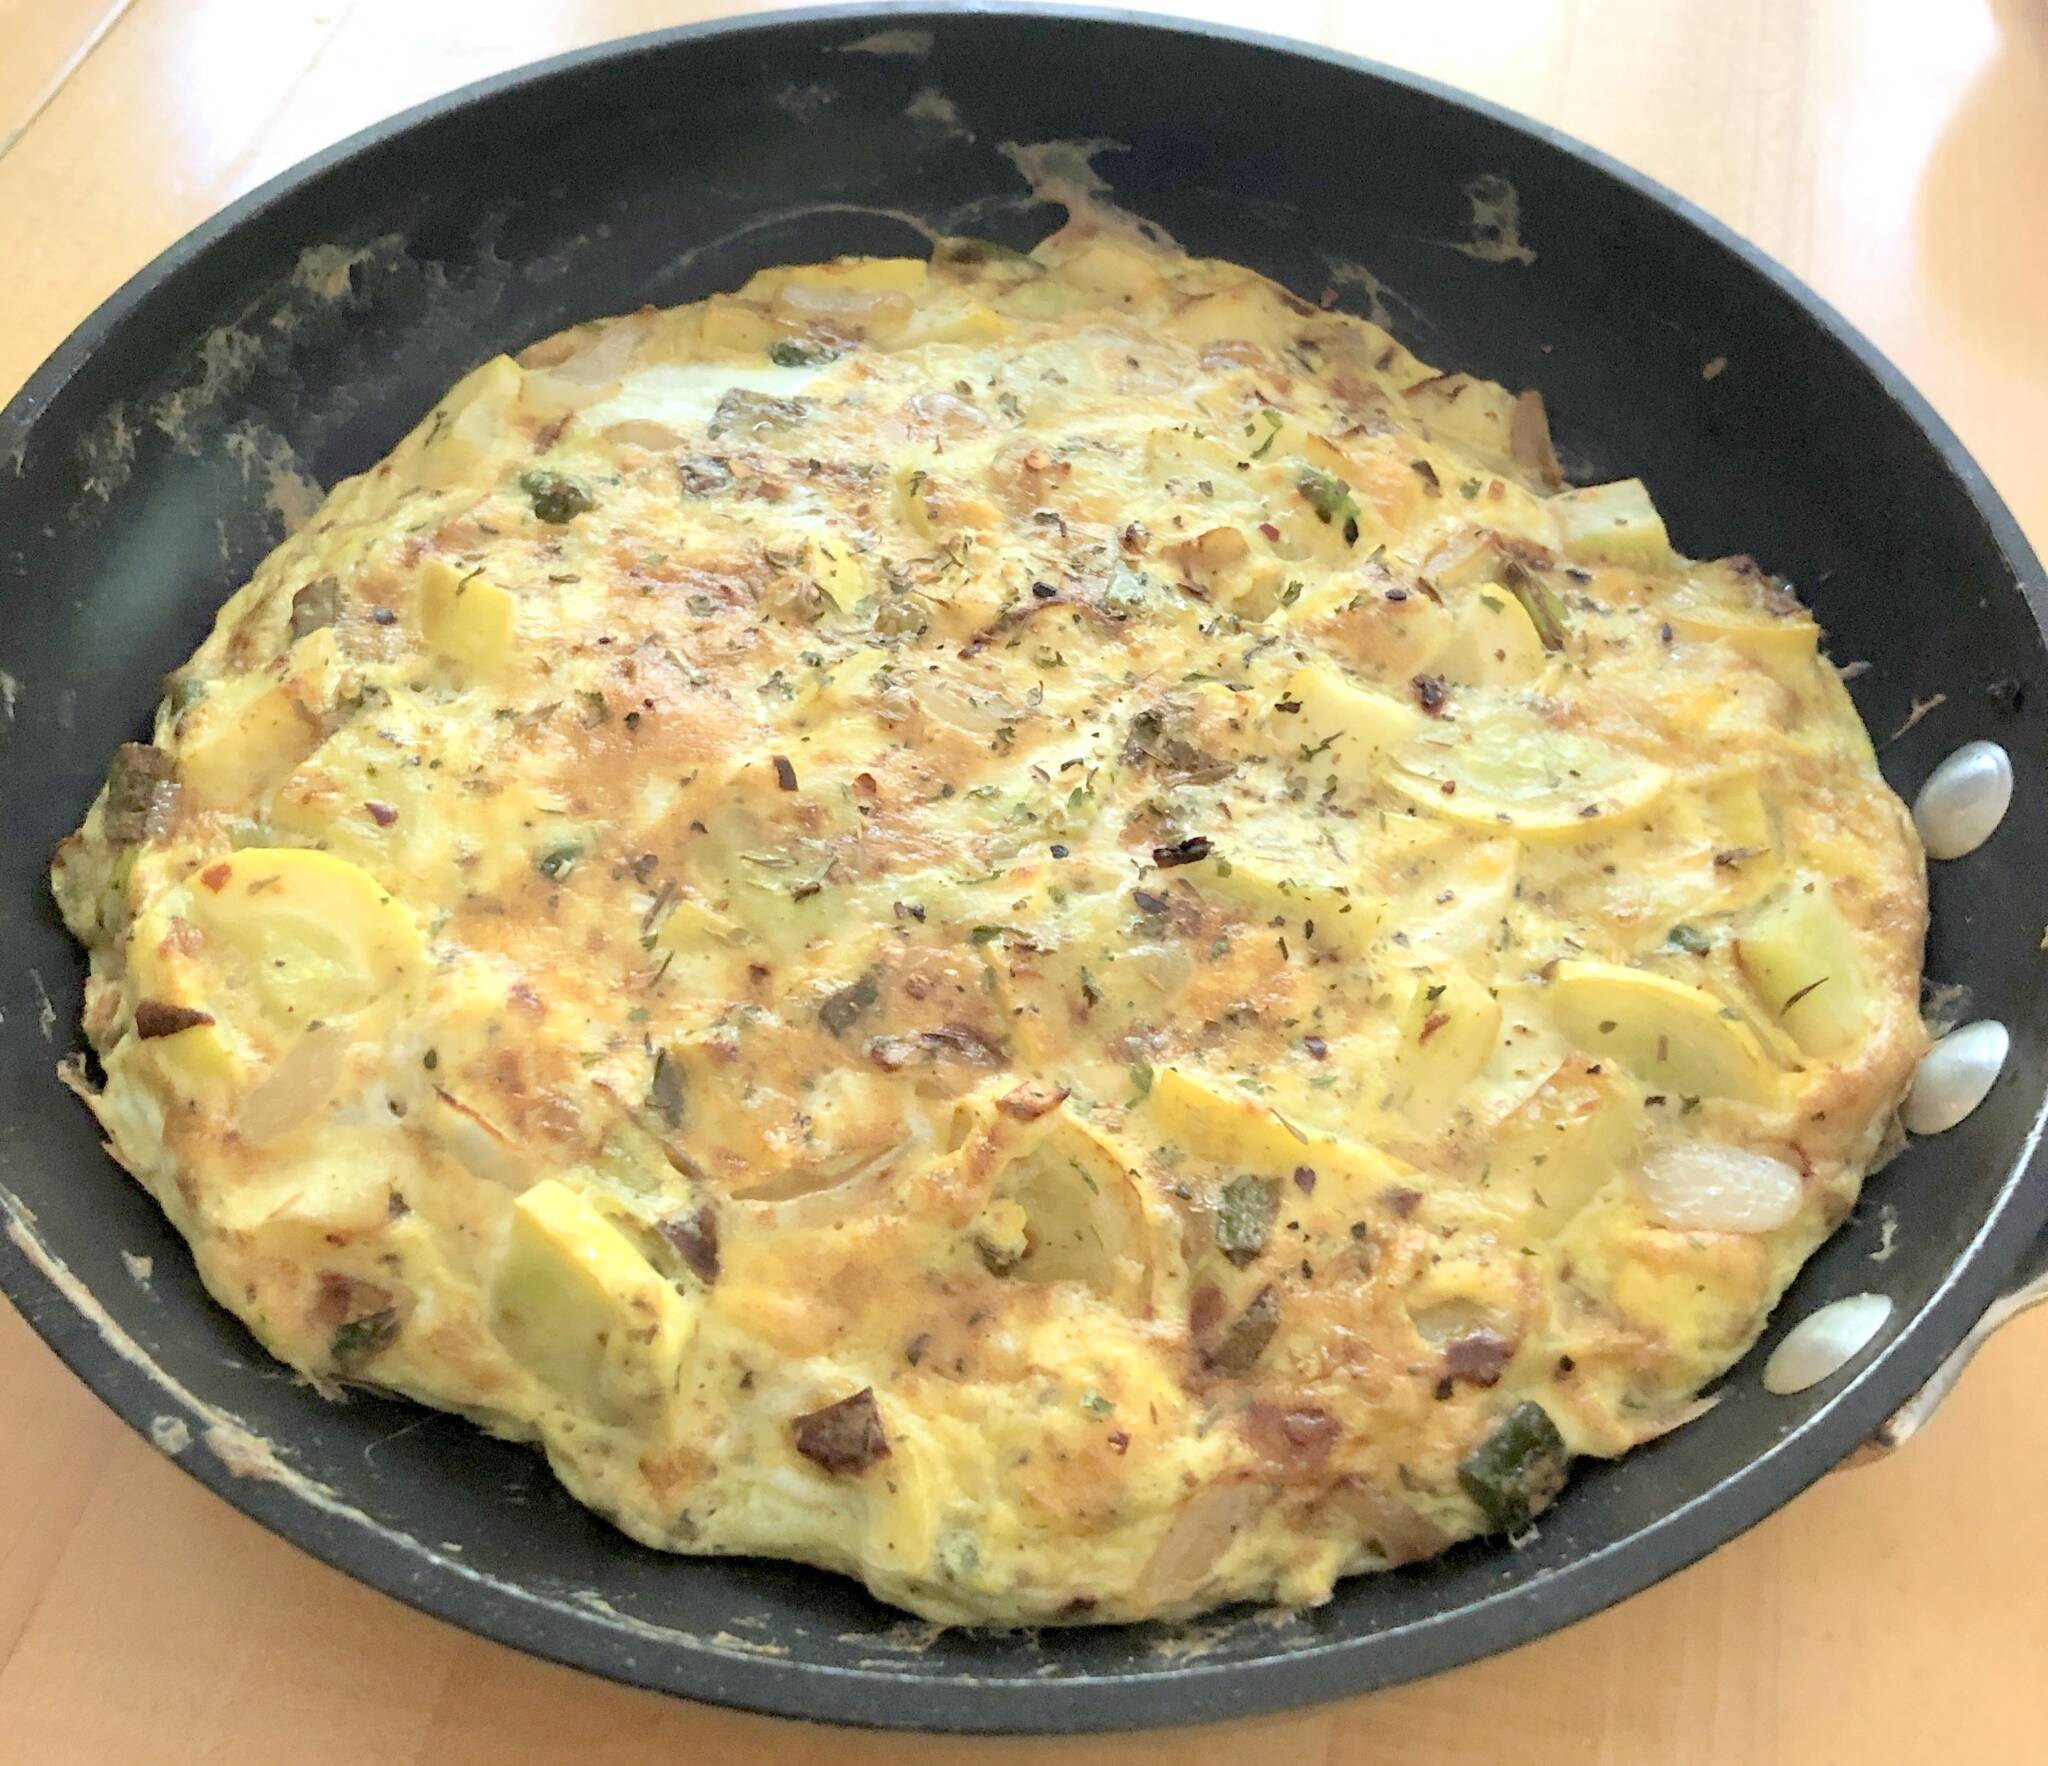 Italian omelette (Frittata)